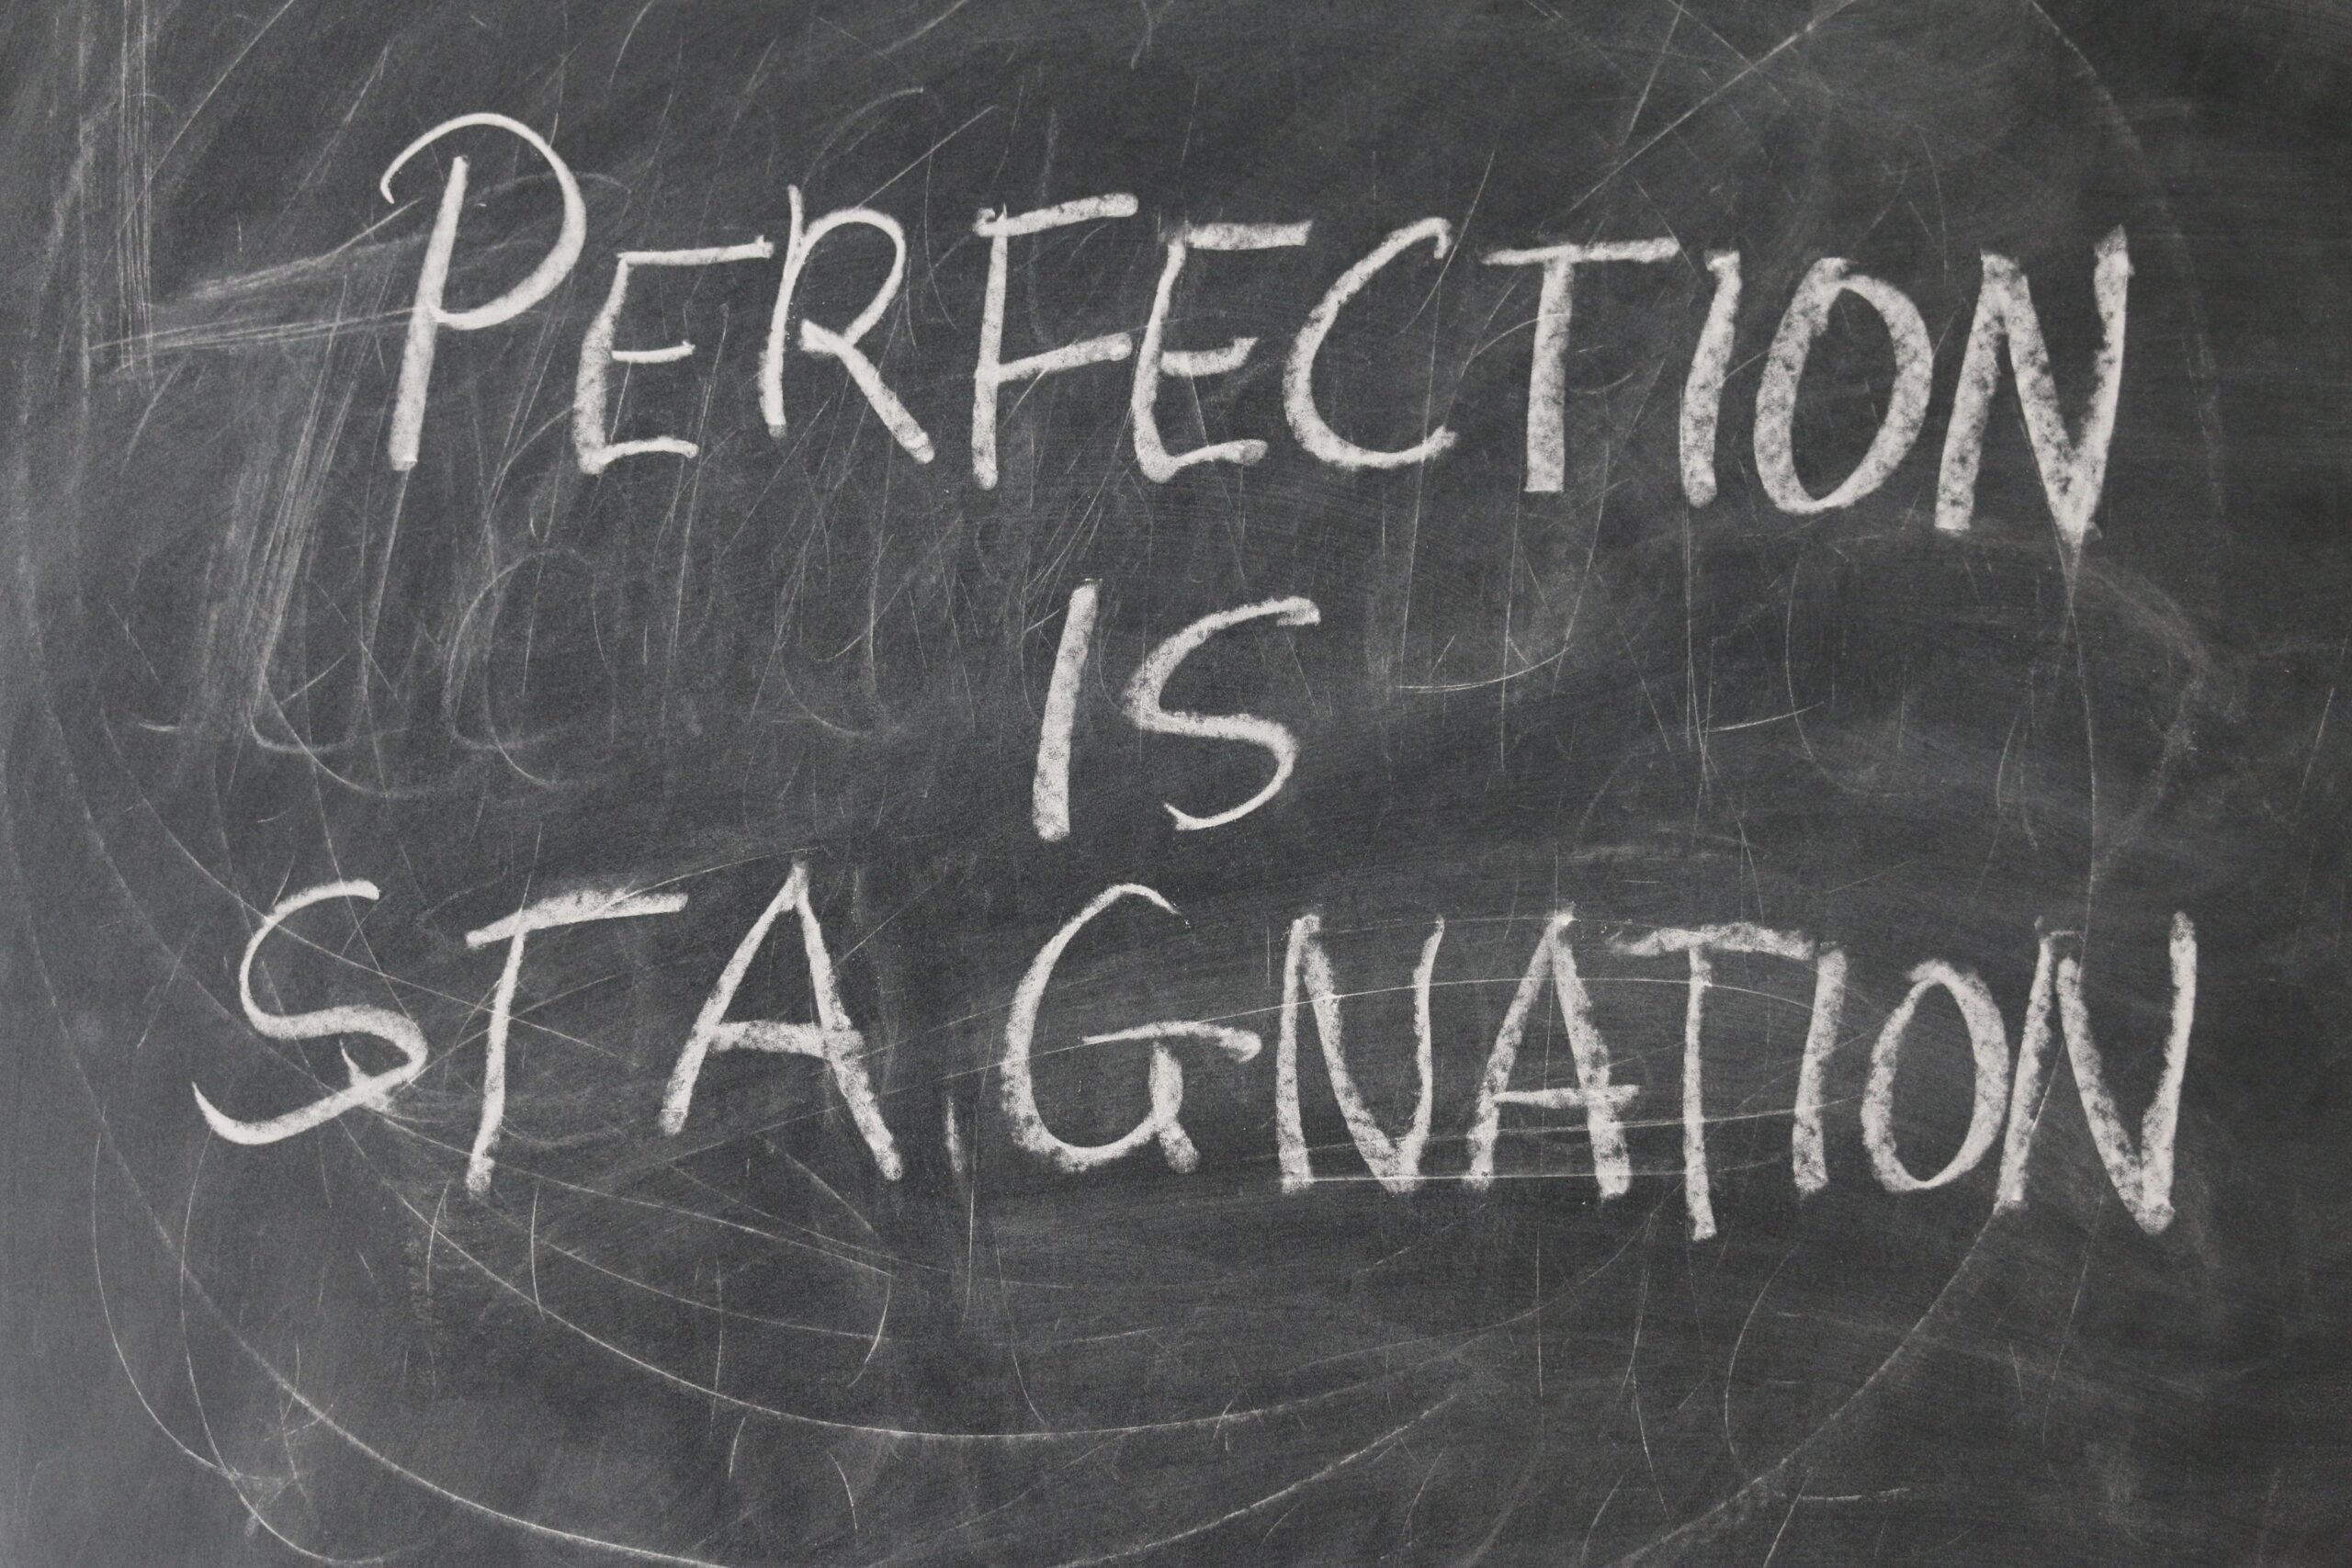 Mit Kreide wurde auf eine Tafel der Satz aufgeschrieben: Perfektion ist Stagnation. Gegen den Vollkommenheitswahn.